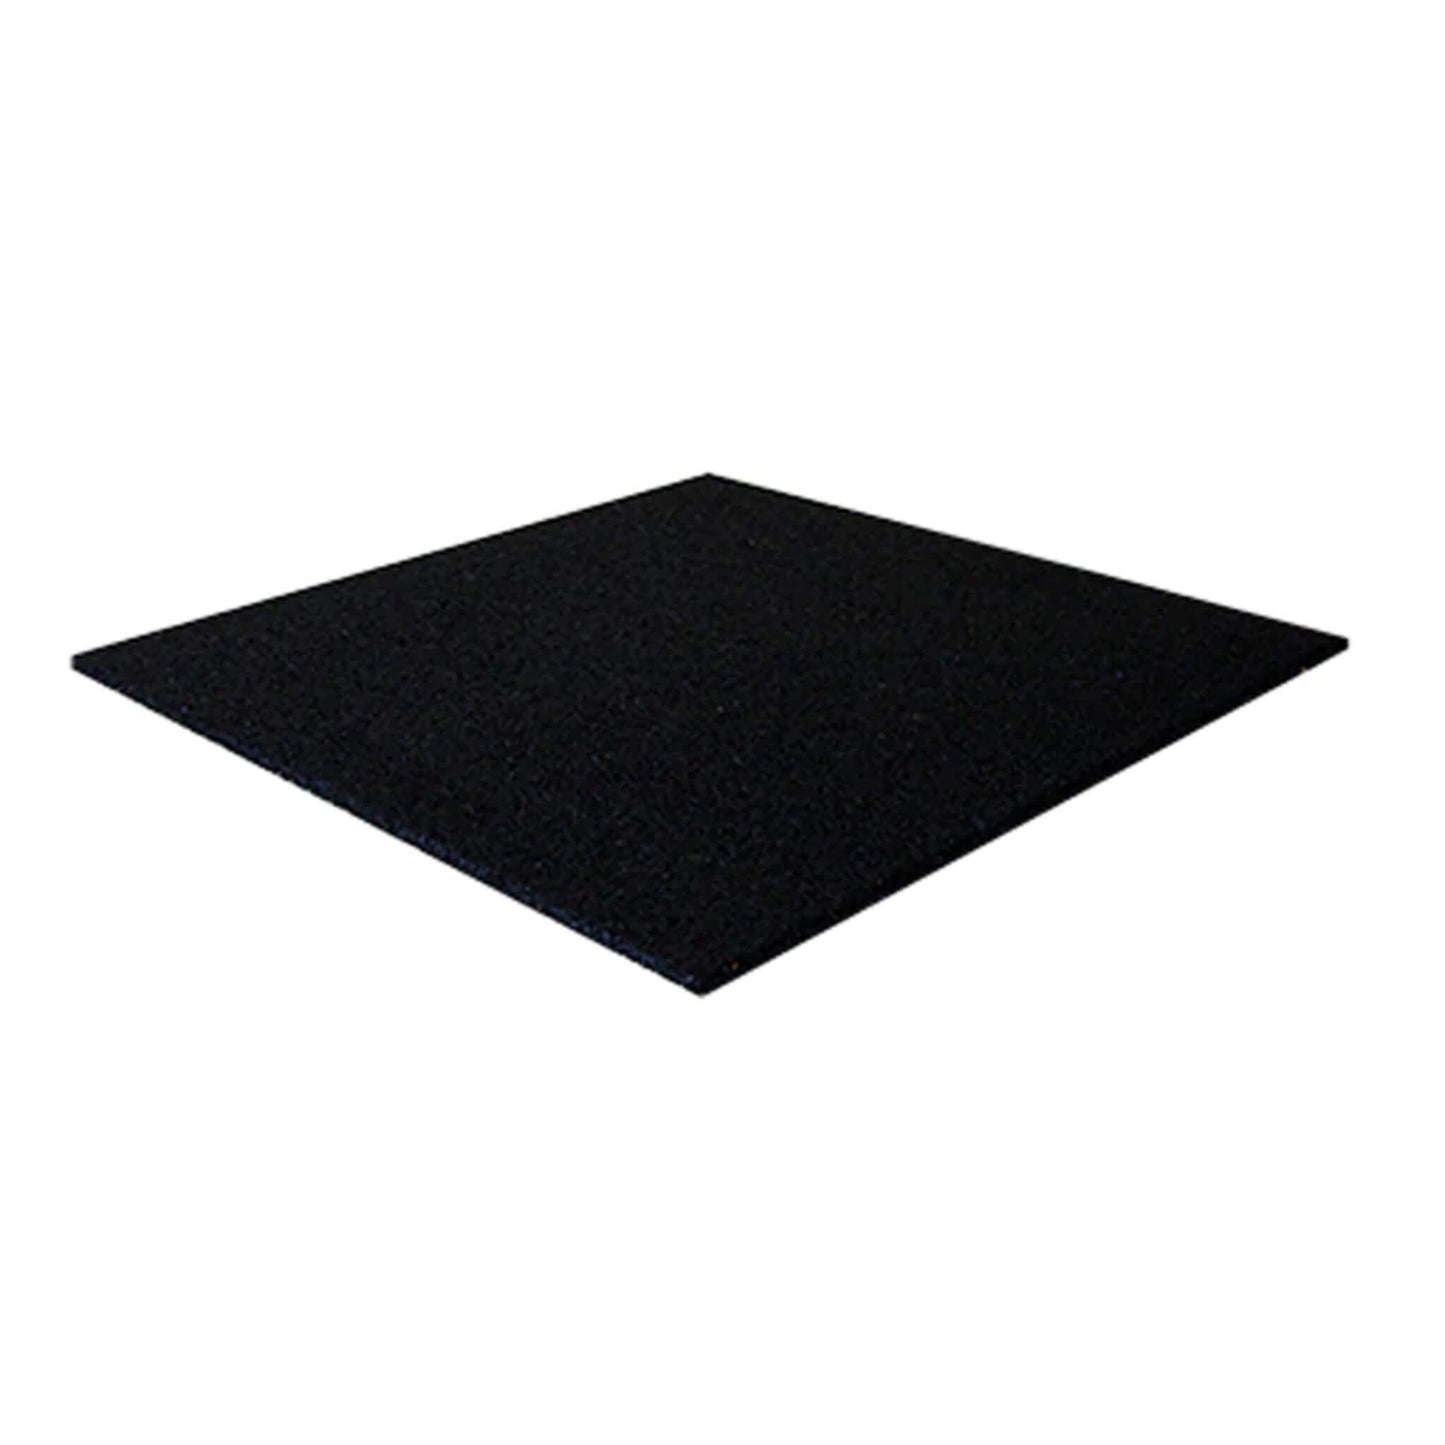 Activ Gym Flooring Tiles (Black) 50cm x 50cm x 15mm rubber